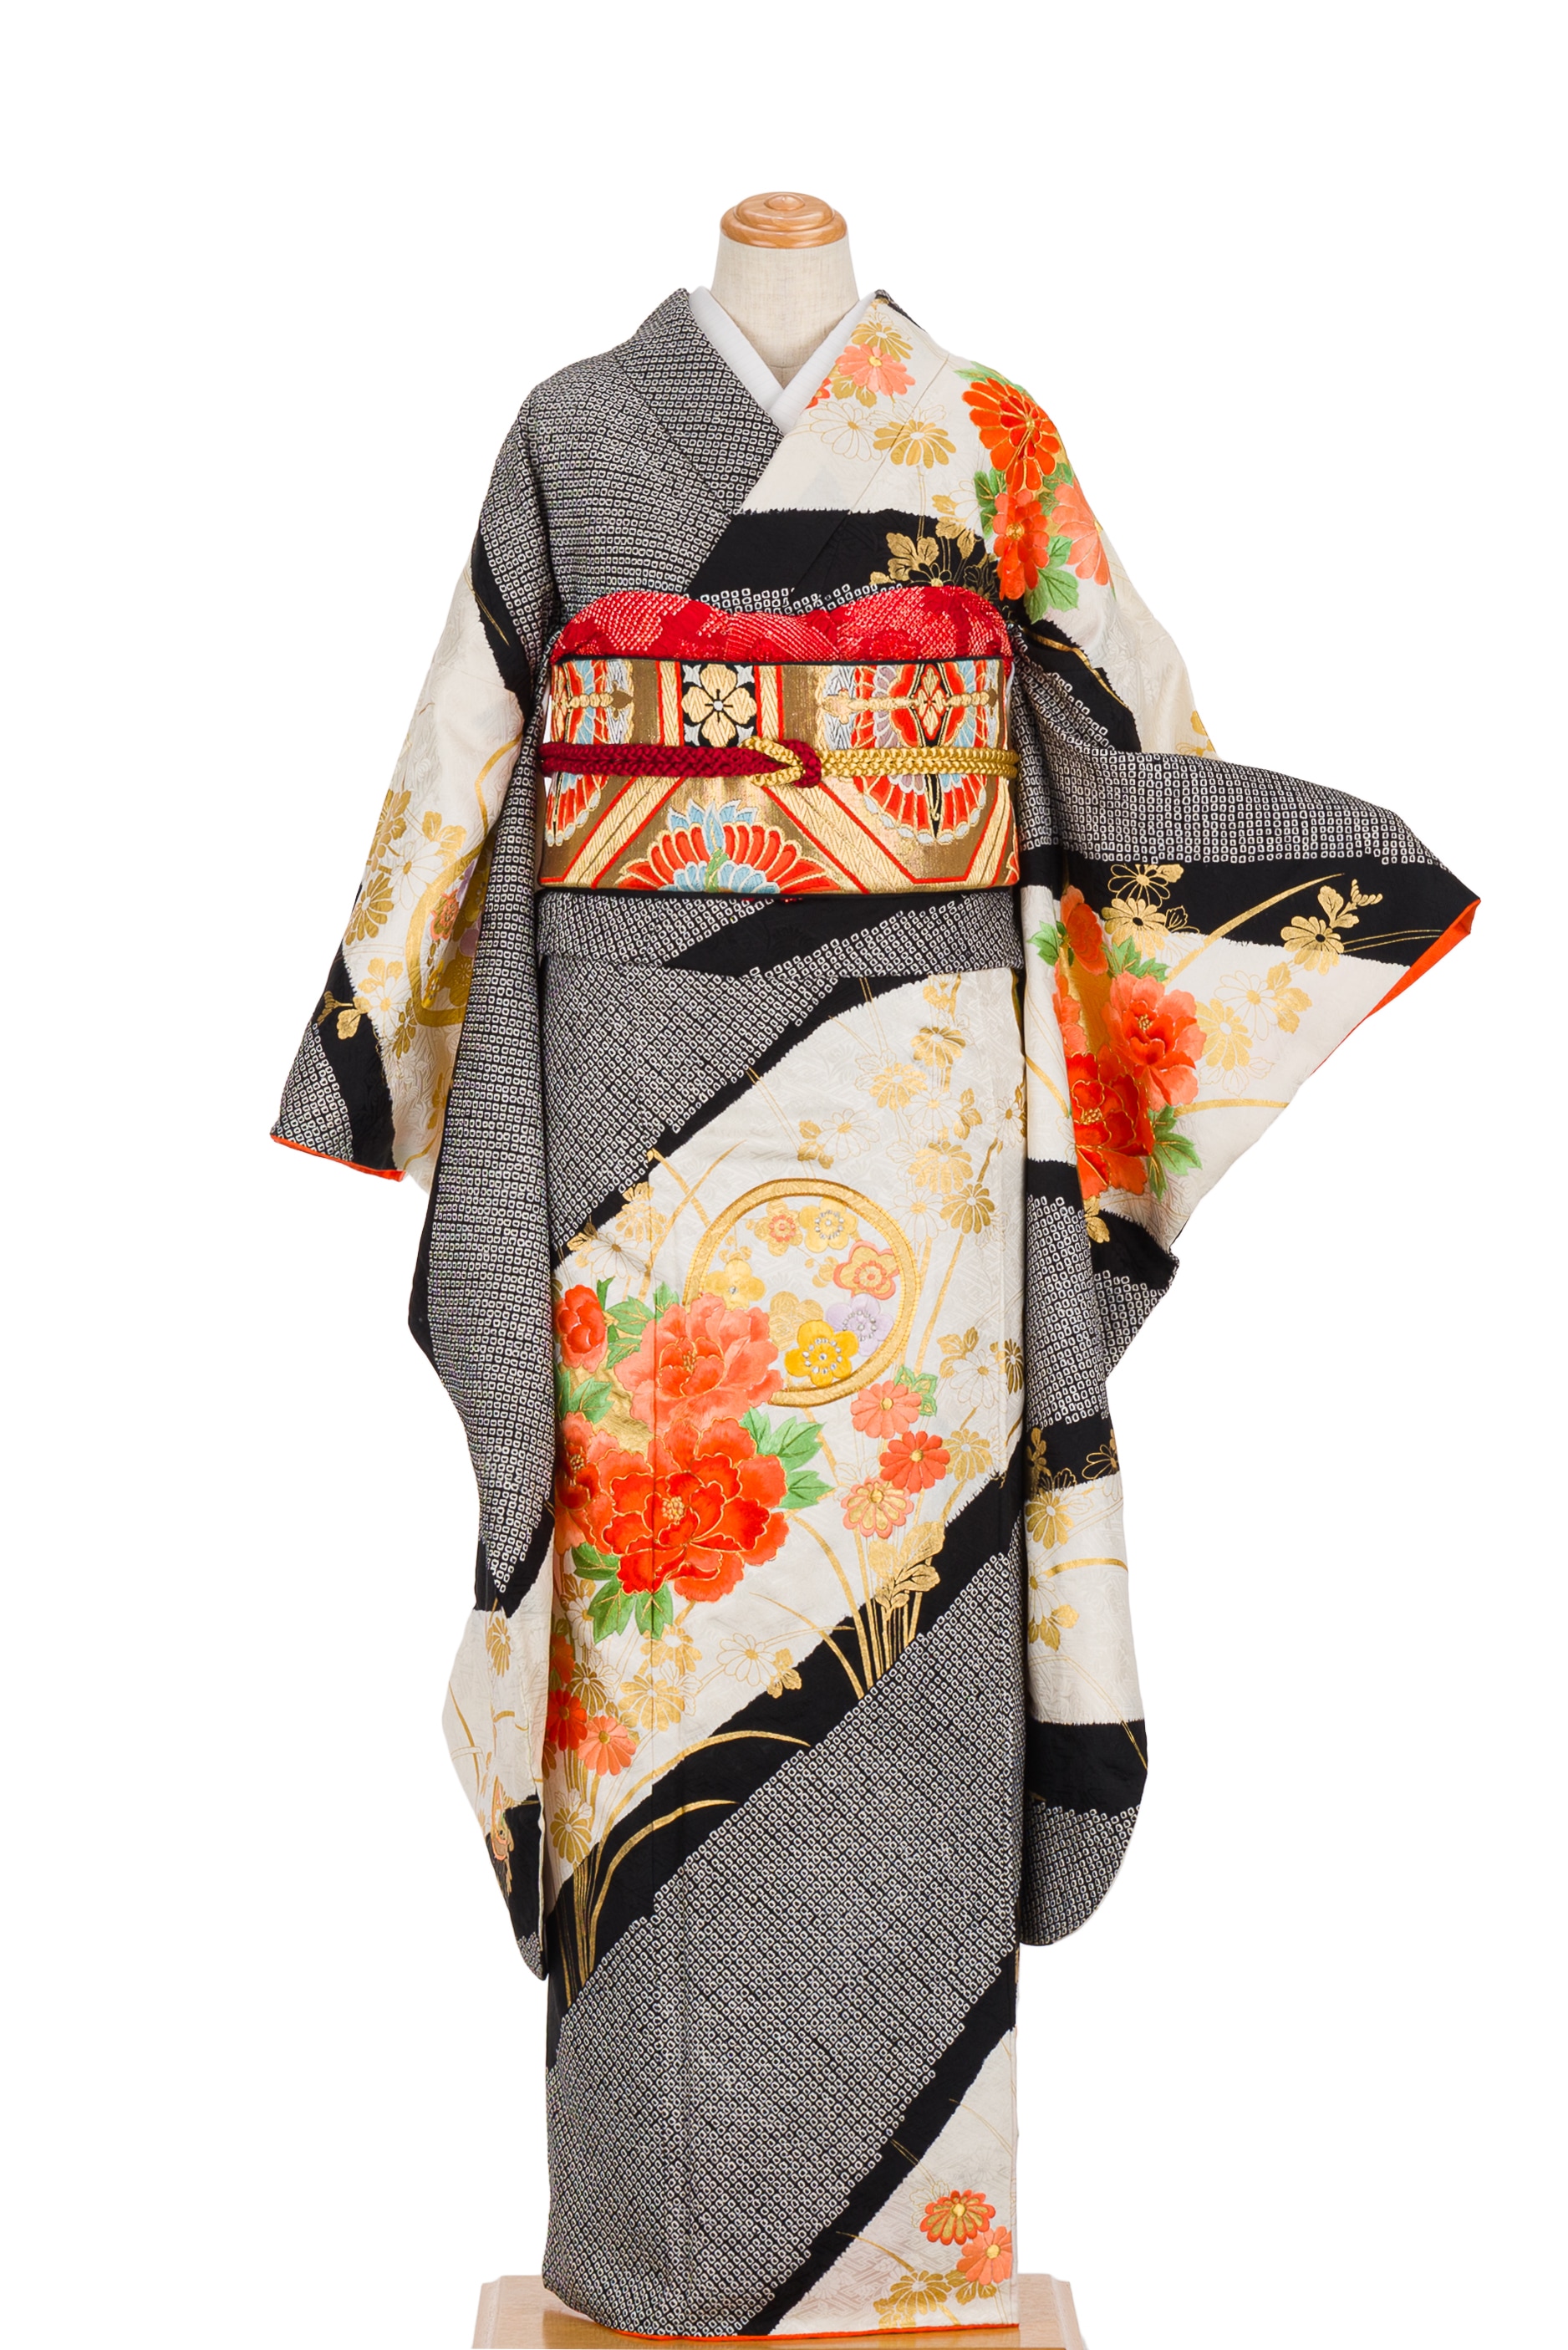 振袖 絞りに花刺繍 - からん::アンティーク着物・リサイクル着物の通販